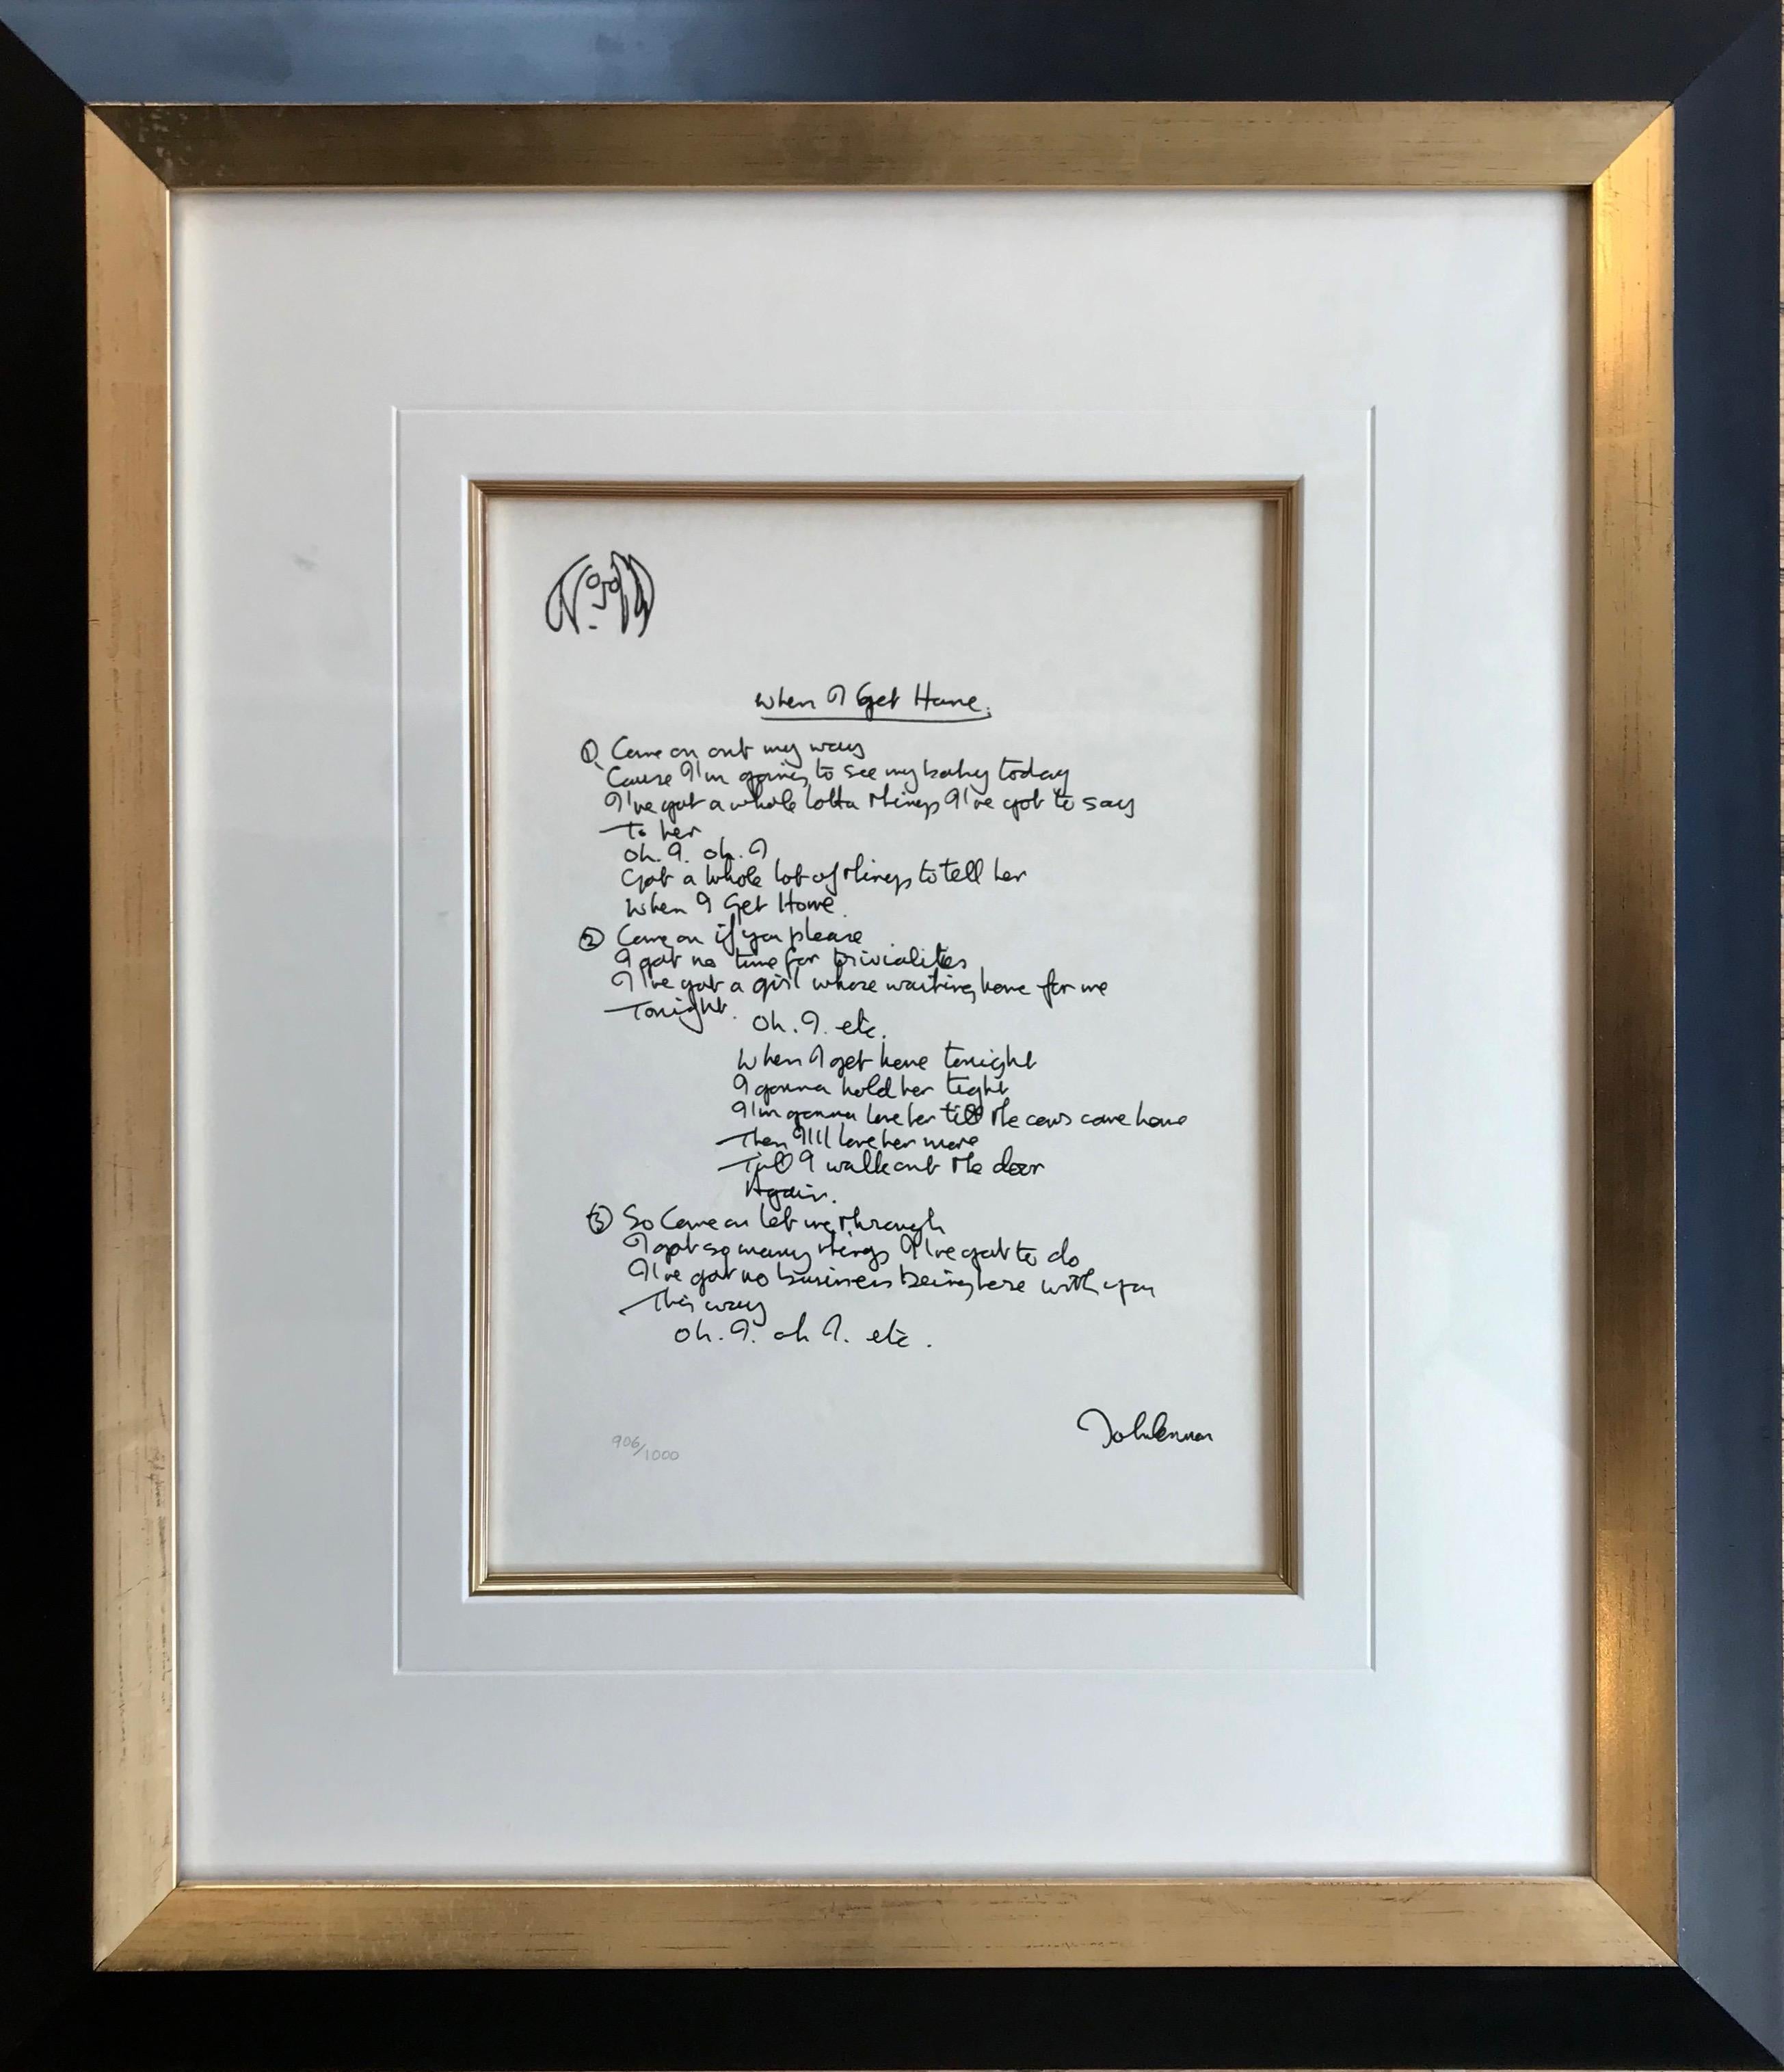 John Lennon Print - "When I Get Home" Framed Limited Edition Hand Written Lyrics